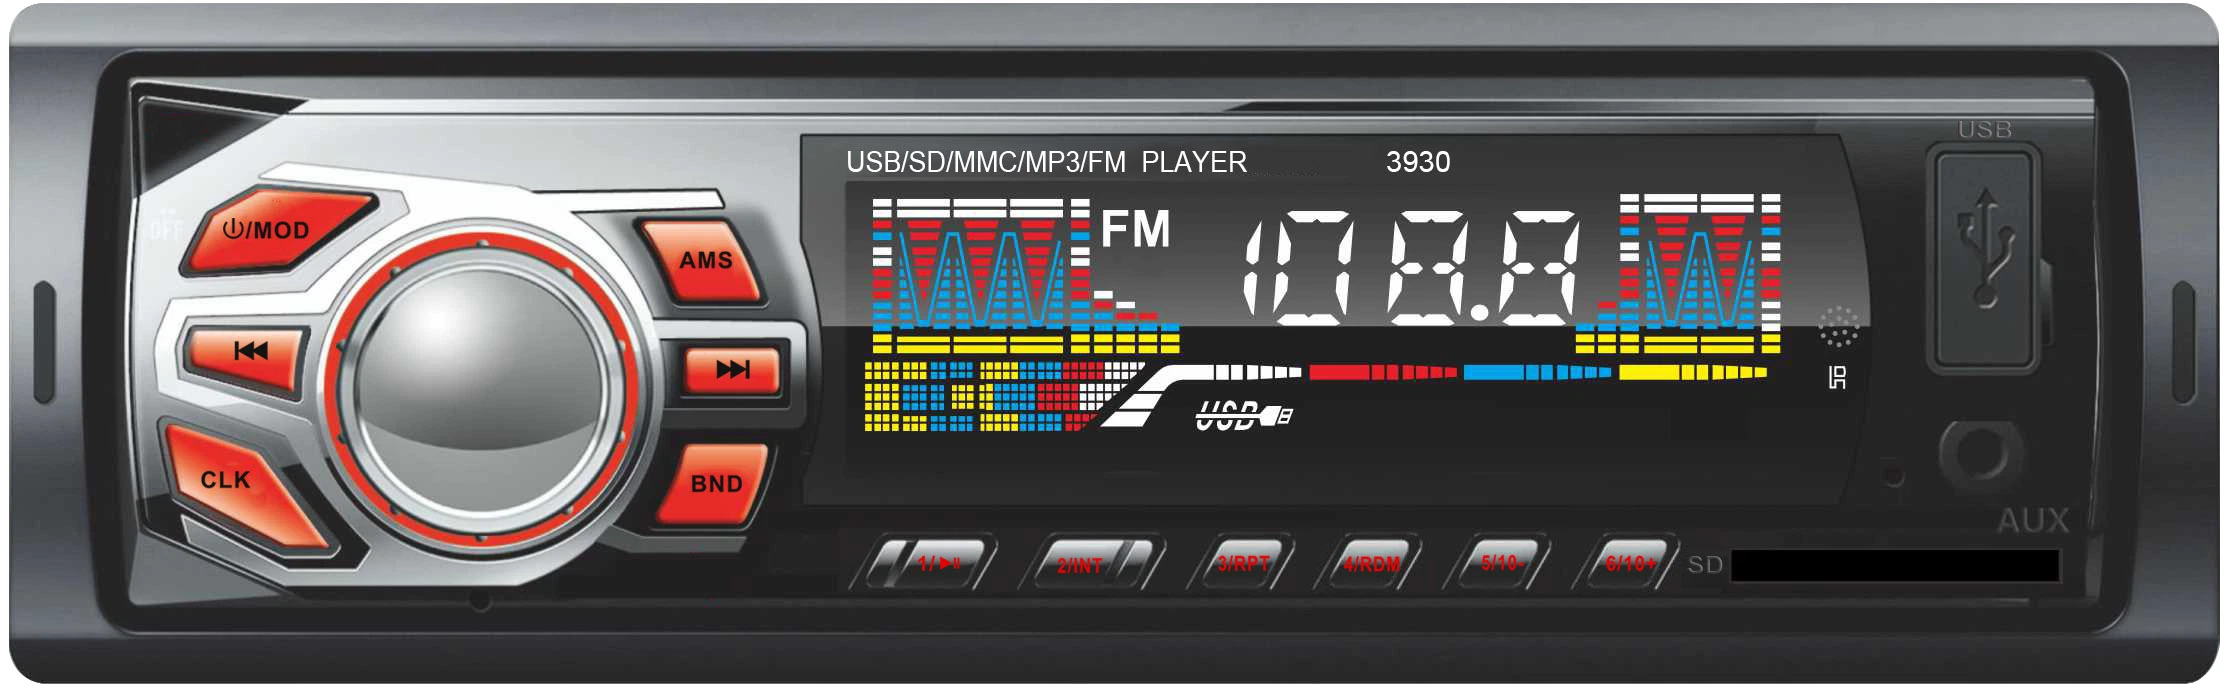 Автомобильный мультимедийный аудиопроигрыватель с двойным разъемом USB и поддержкой MP3 и Bluetooth